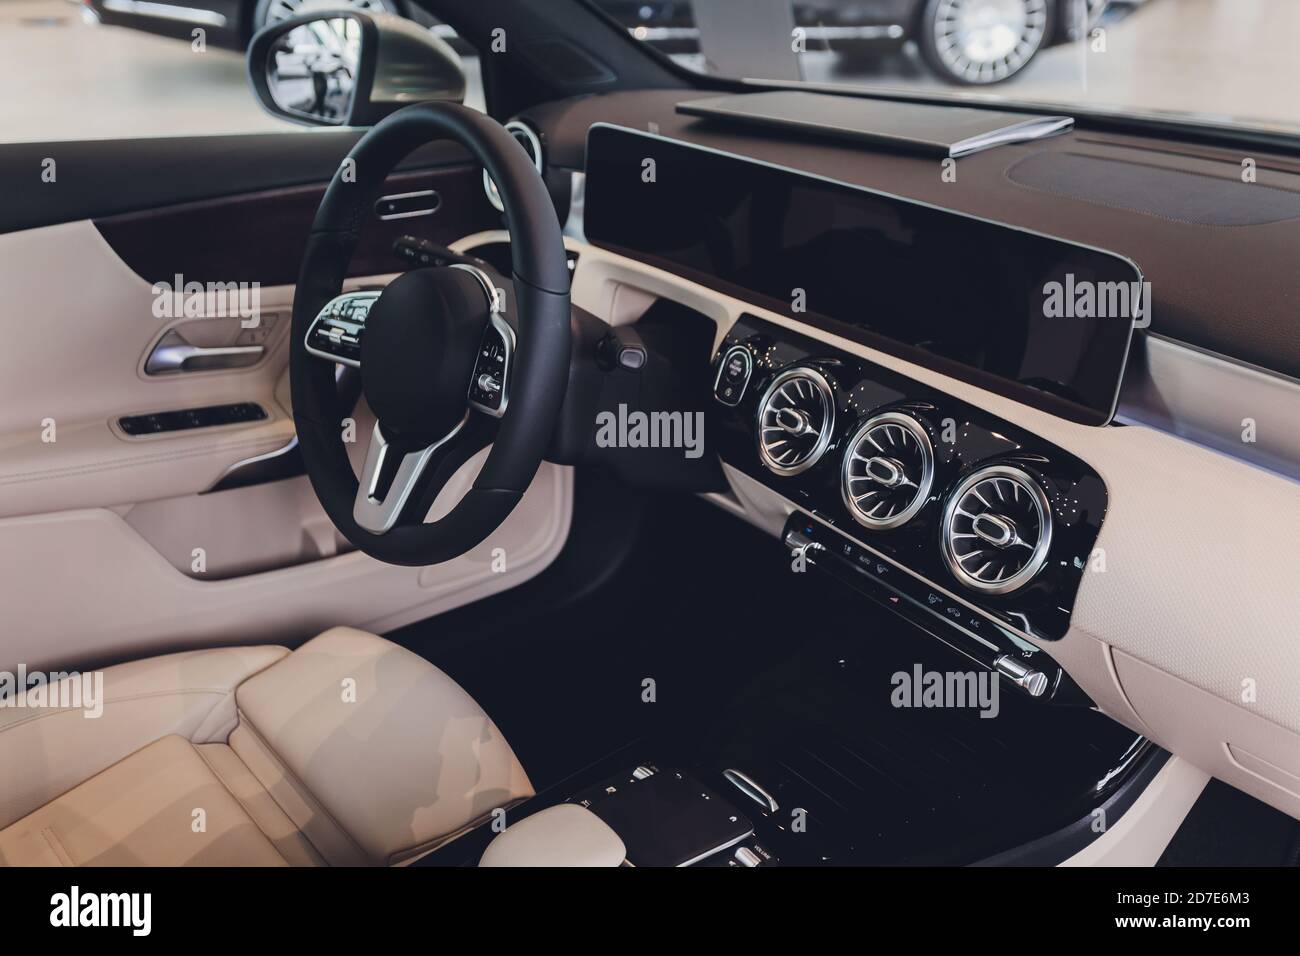 Innenansicht des Autos mit Ledersalon Stockfotografie - Alamy